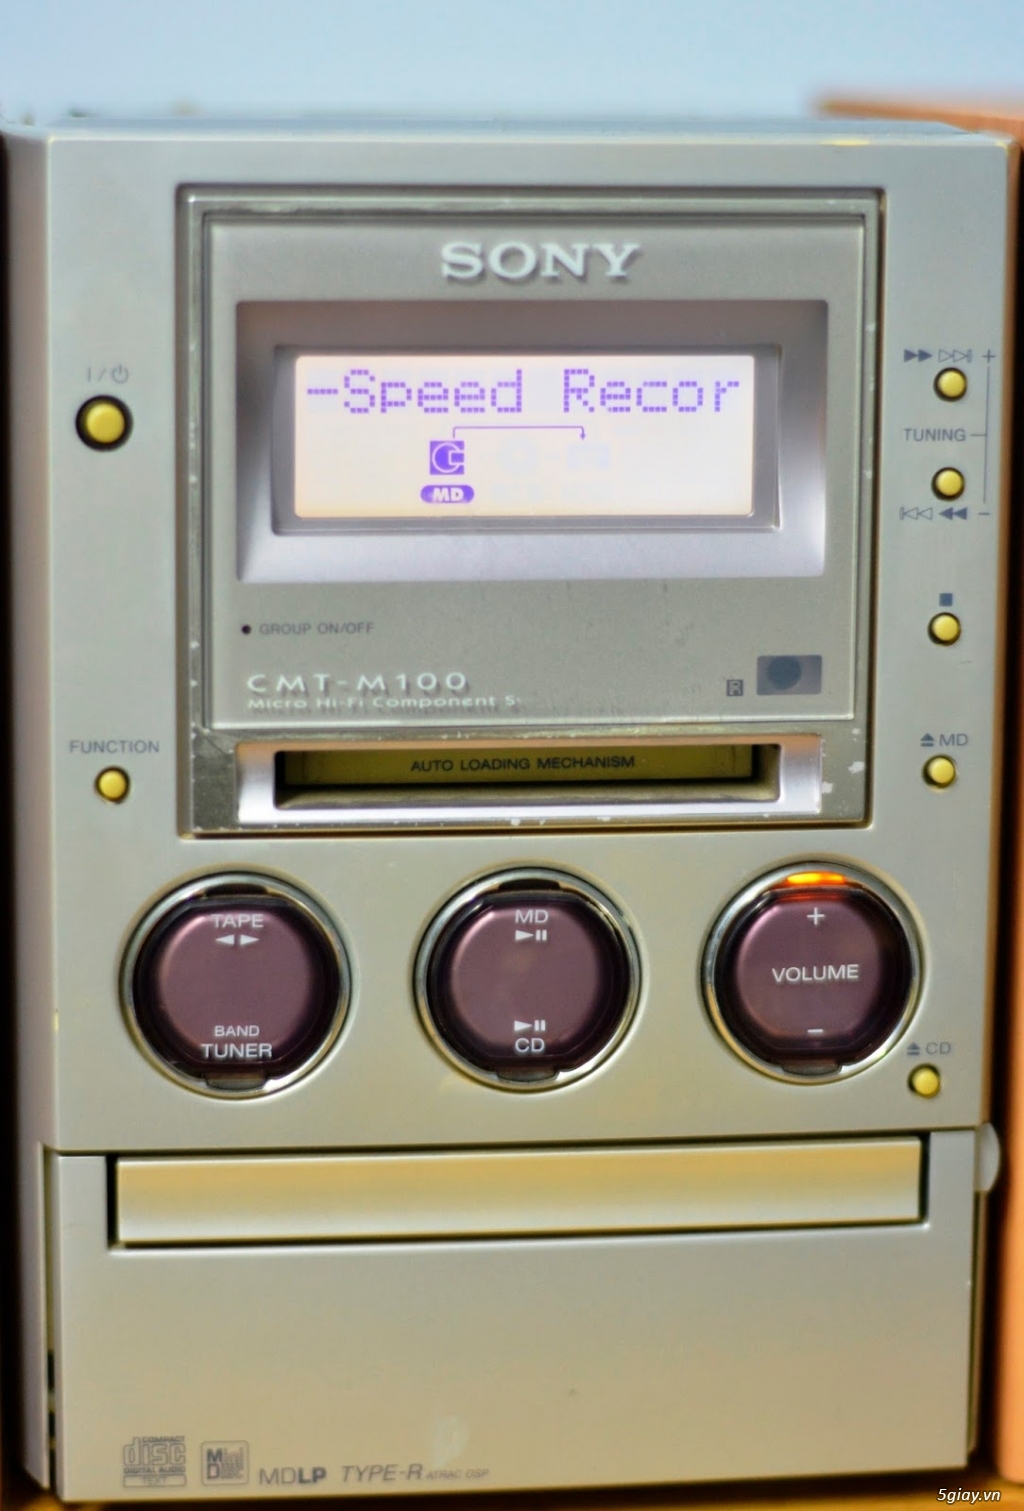 Dàn âm thanh nội địa Nhật Bản Sony, Denon, Onkyo,Panasonic, Kenwood... - 28